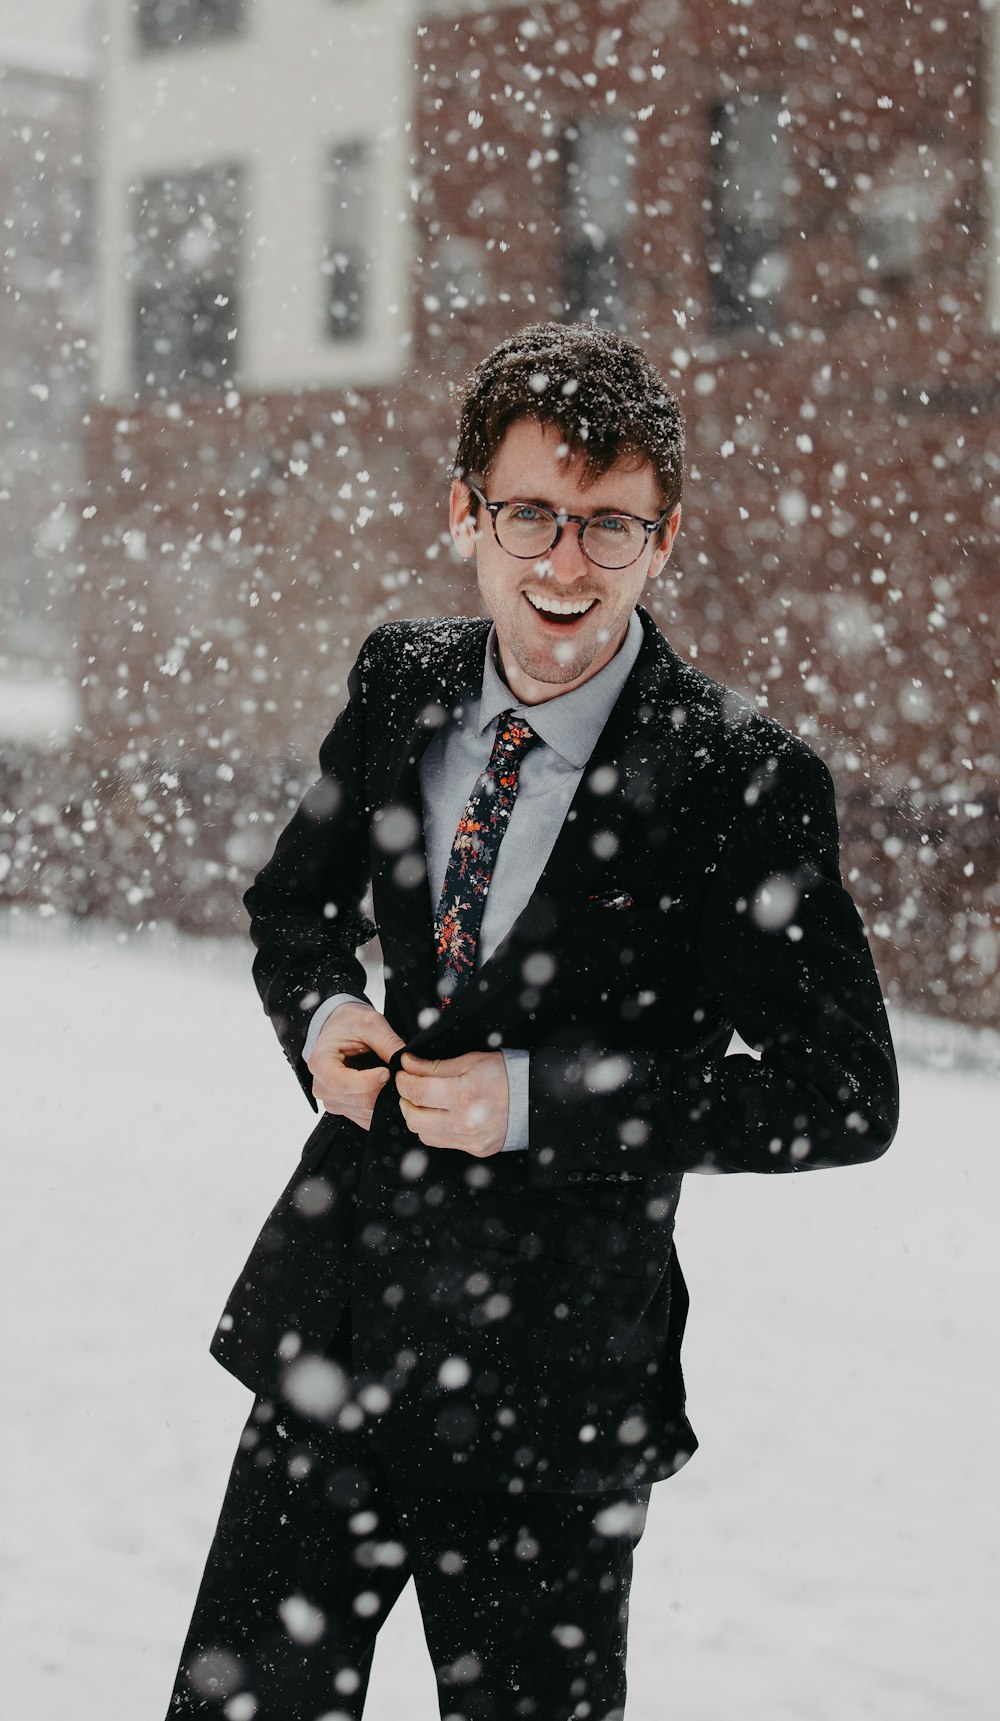 Mann im schwarzen Anzug unter Schnee